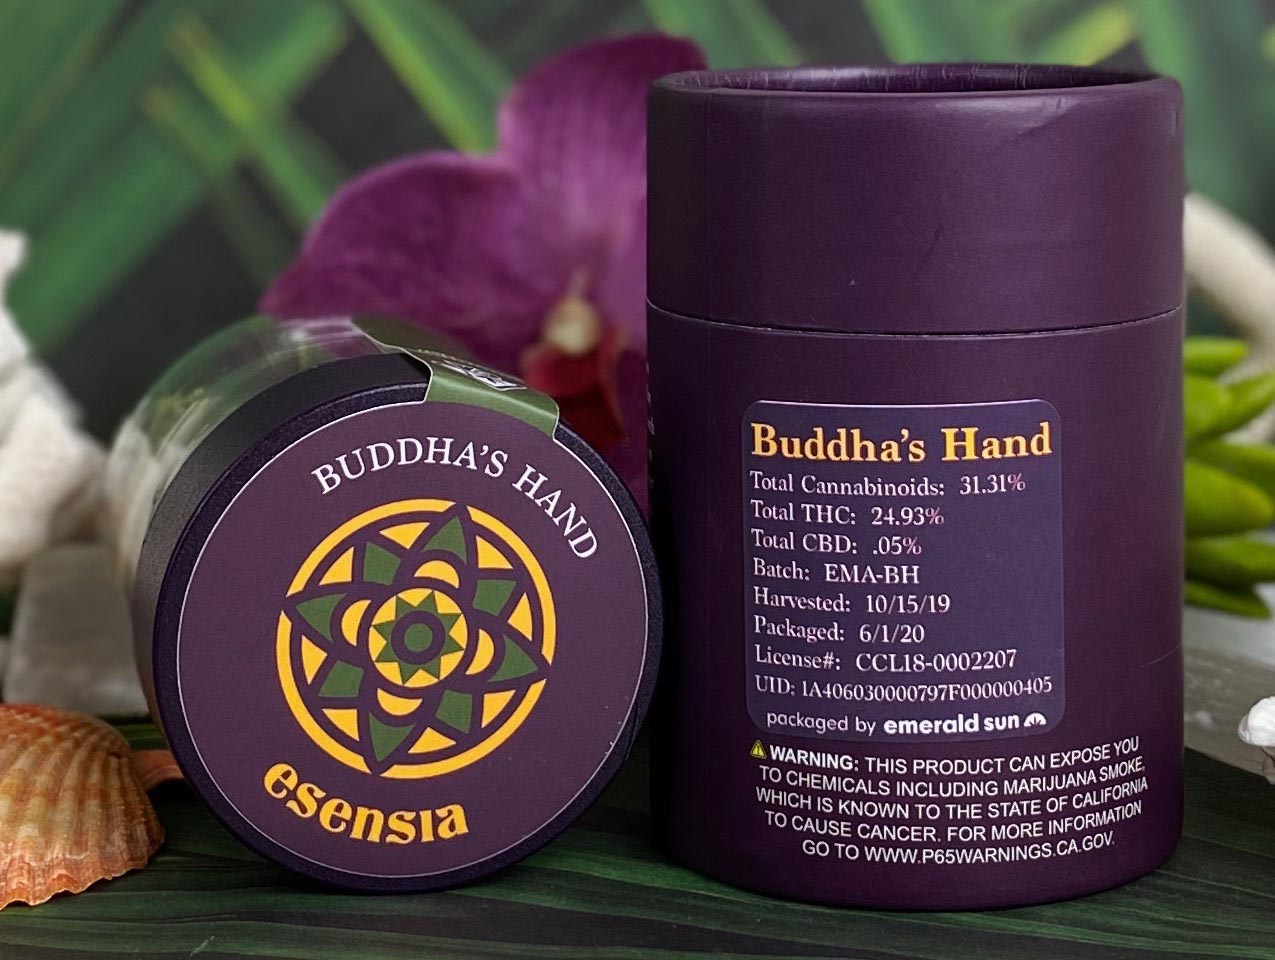 Buddah’a Hand by Esenia